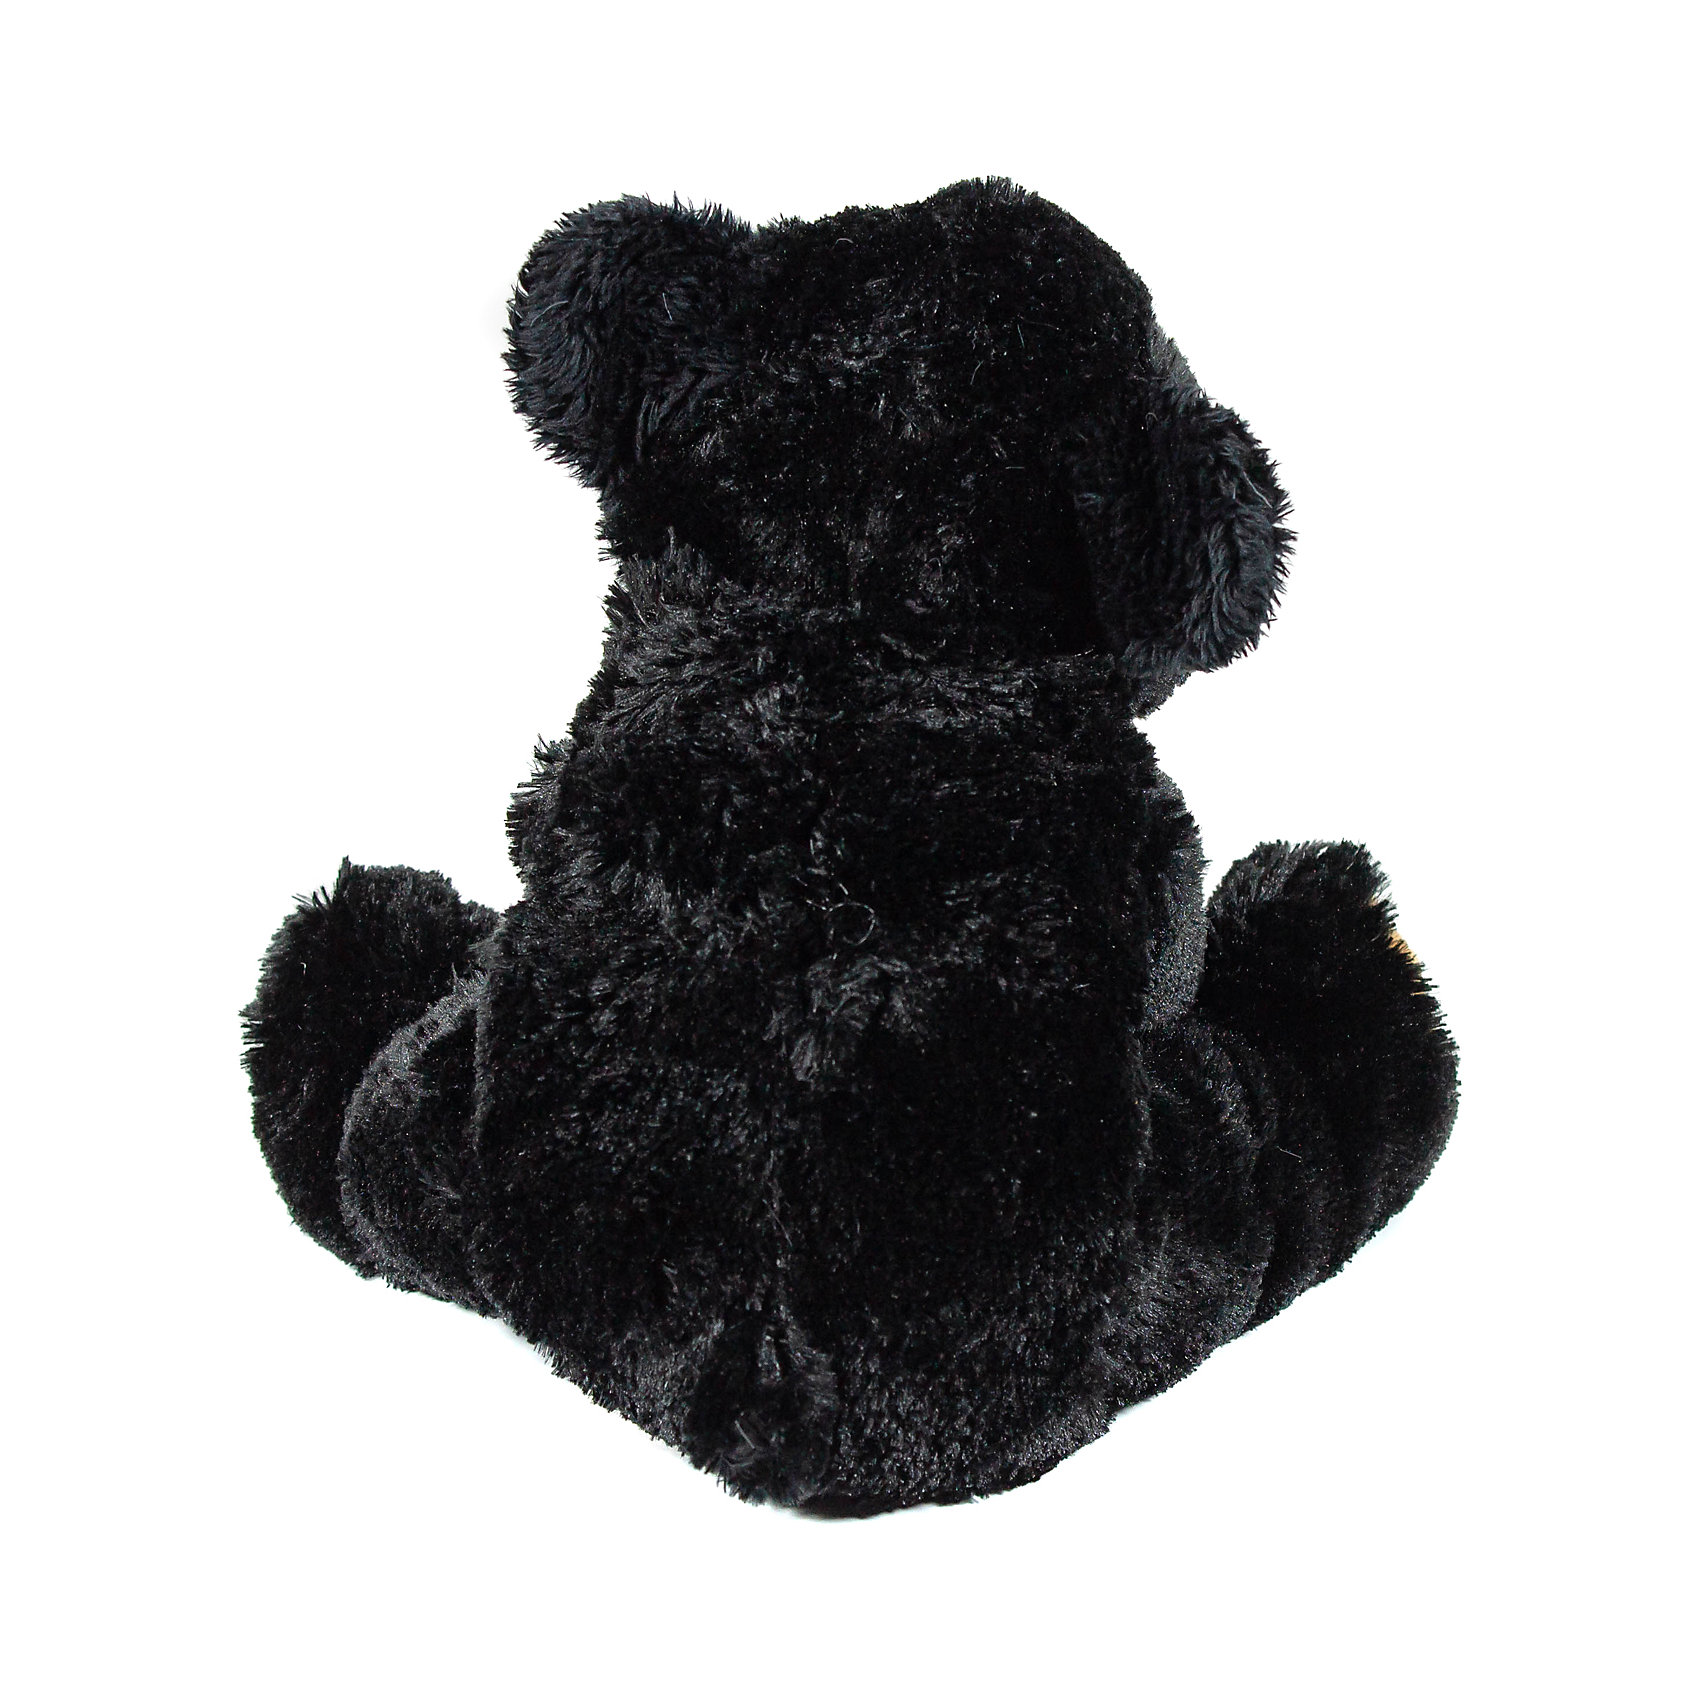 Черно плюшевая. Черный плюшевый мишка. Мягкая игрушка черный медведь. Черный Медвежонок игрушка. Черный Медвежонок плюшевый.